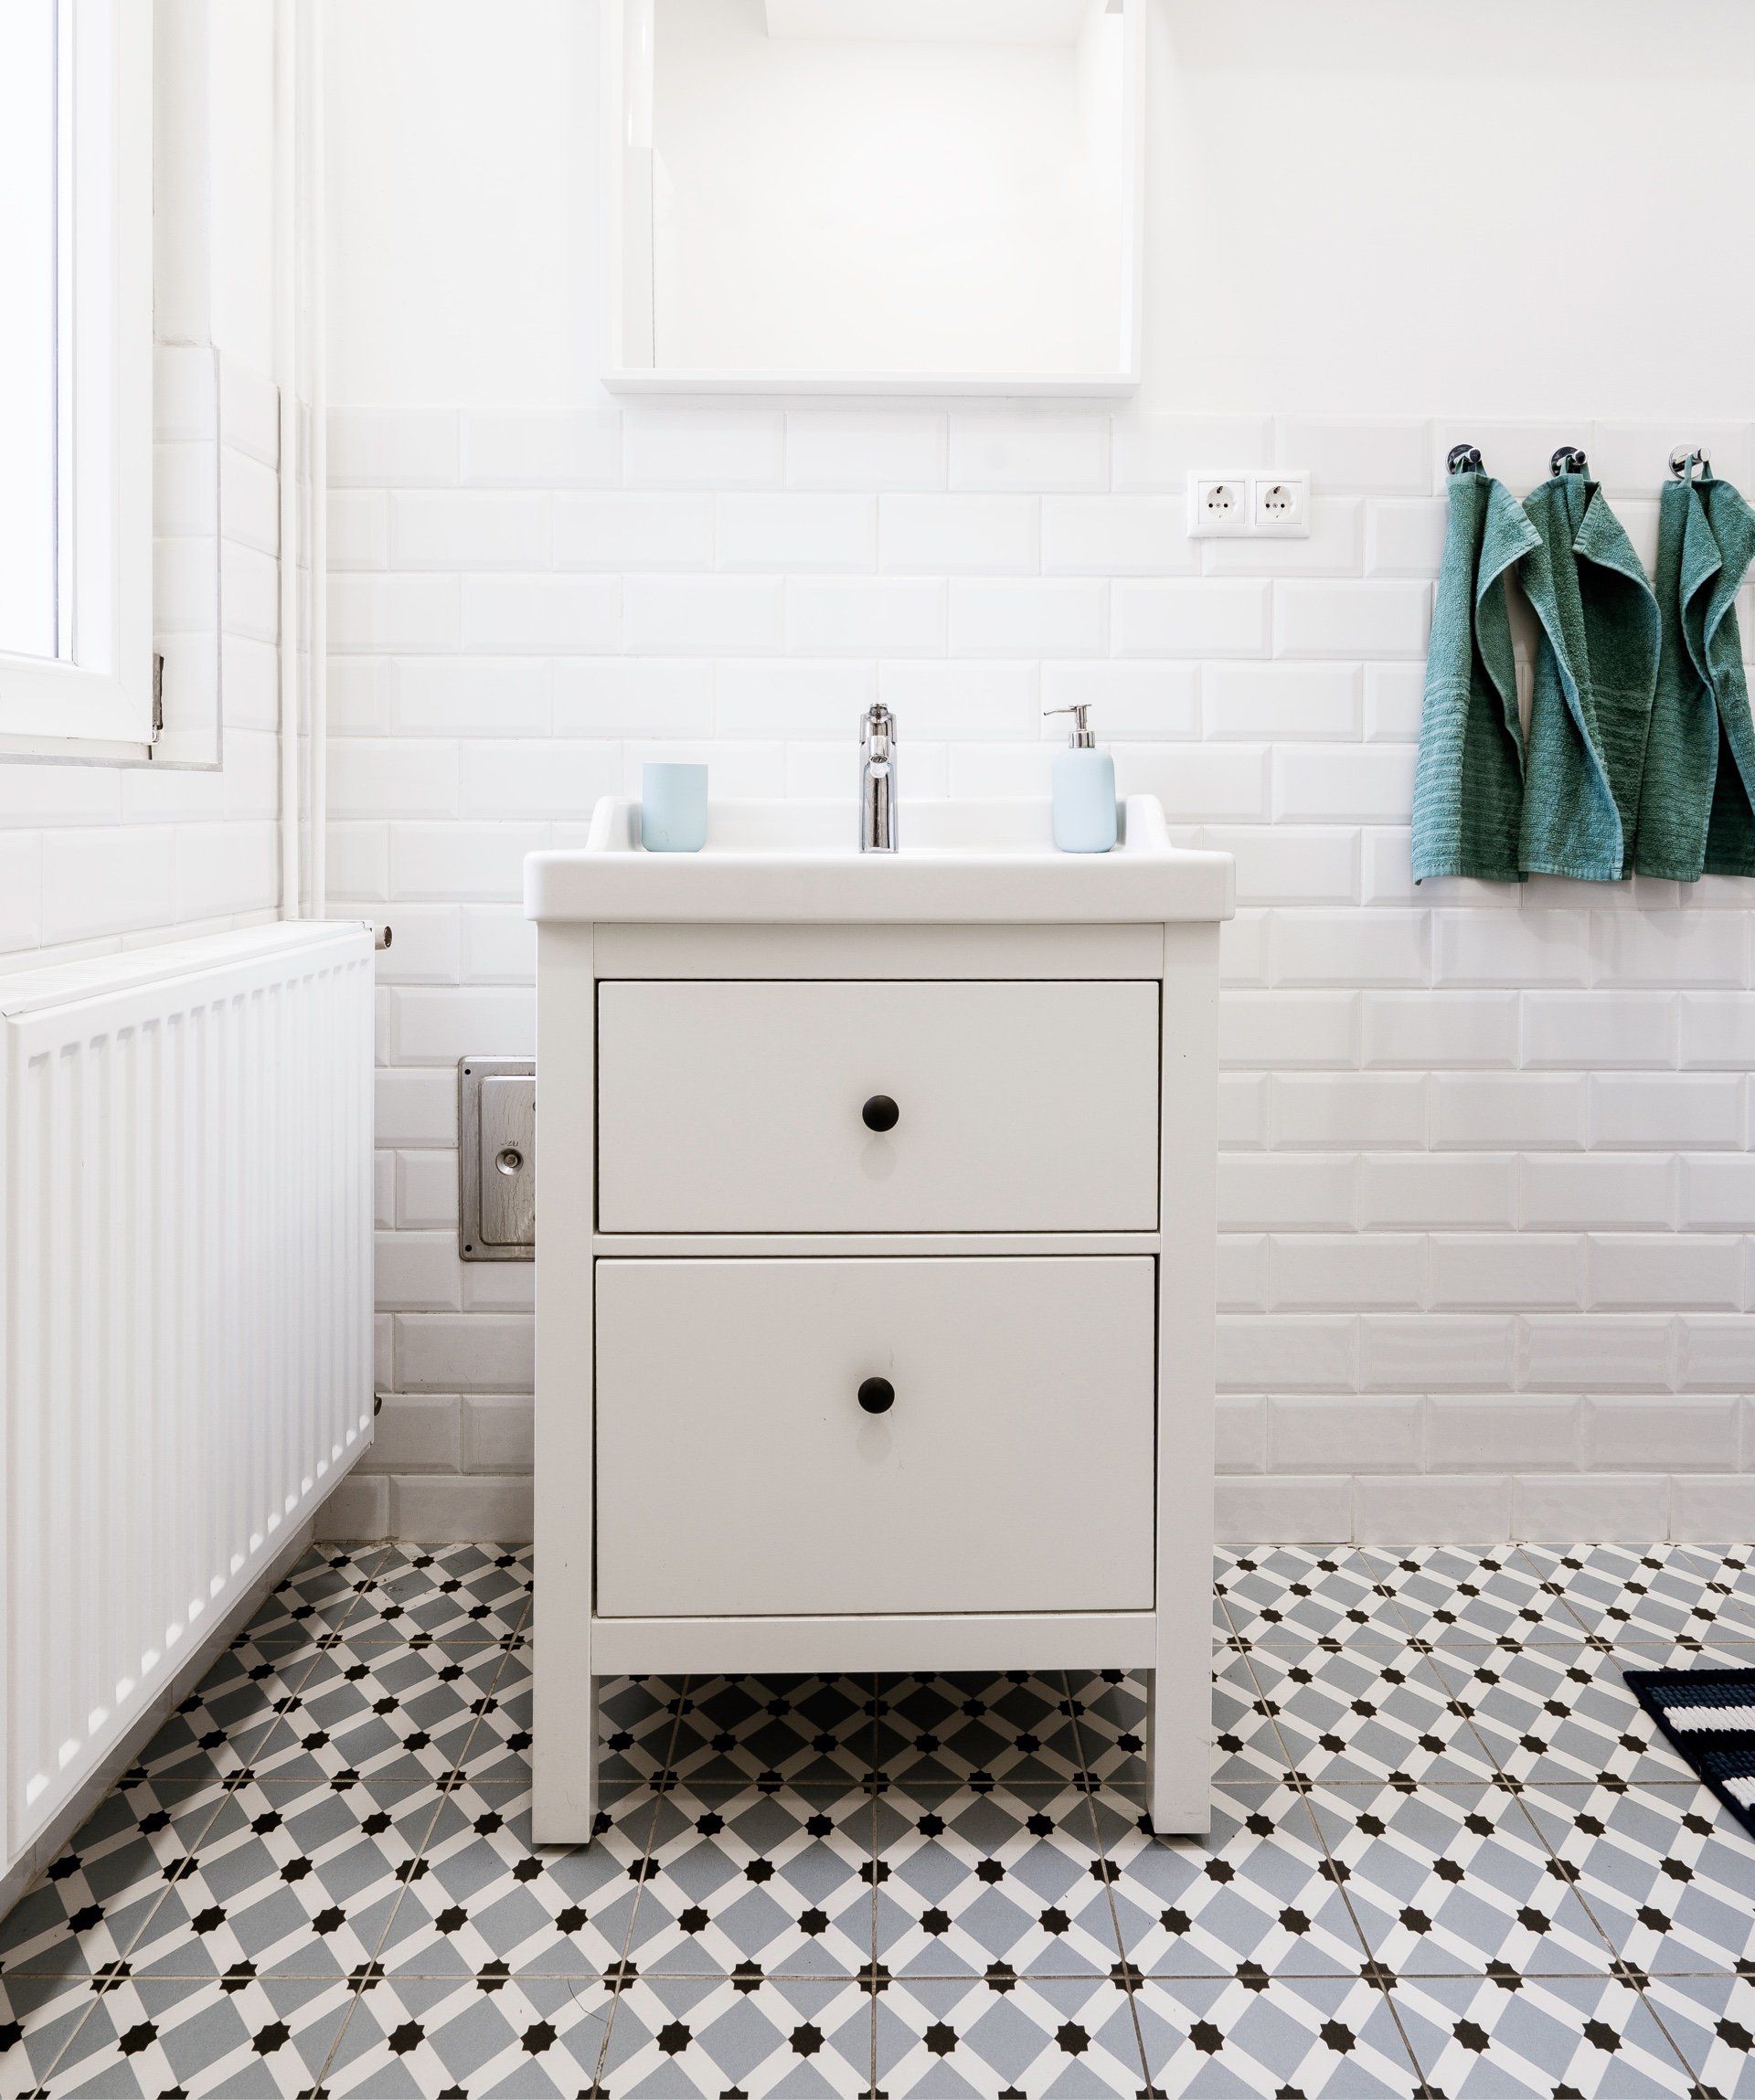 Een badkamer met wastafel, spiegel en handdoeken aan de muur.